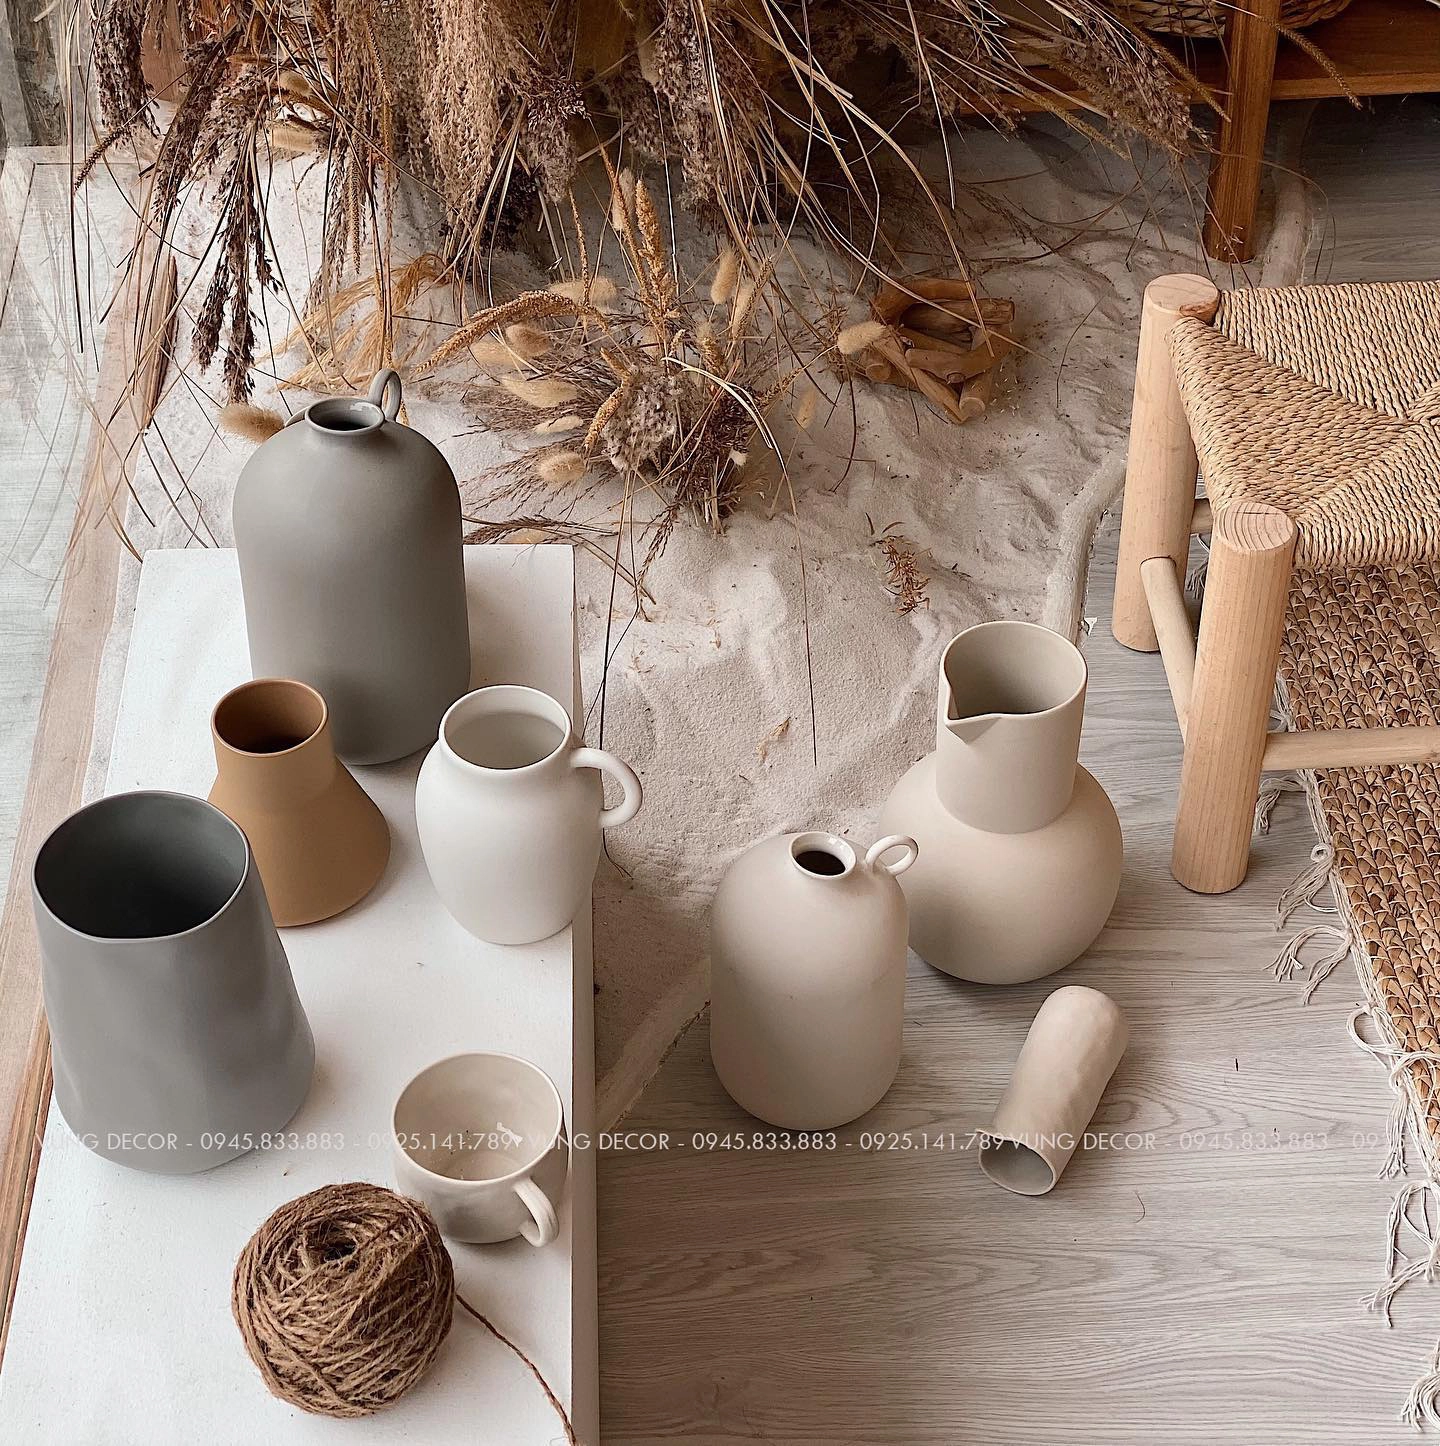 Gốm và gỗ - các chất liệu phù hợp cho người mệnh Thổ.

Nguồn: newsnpr